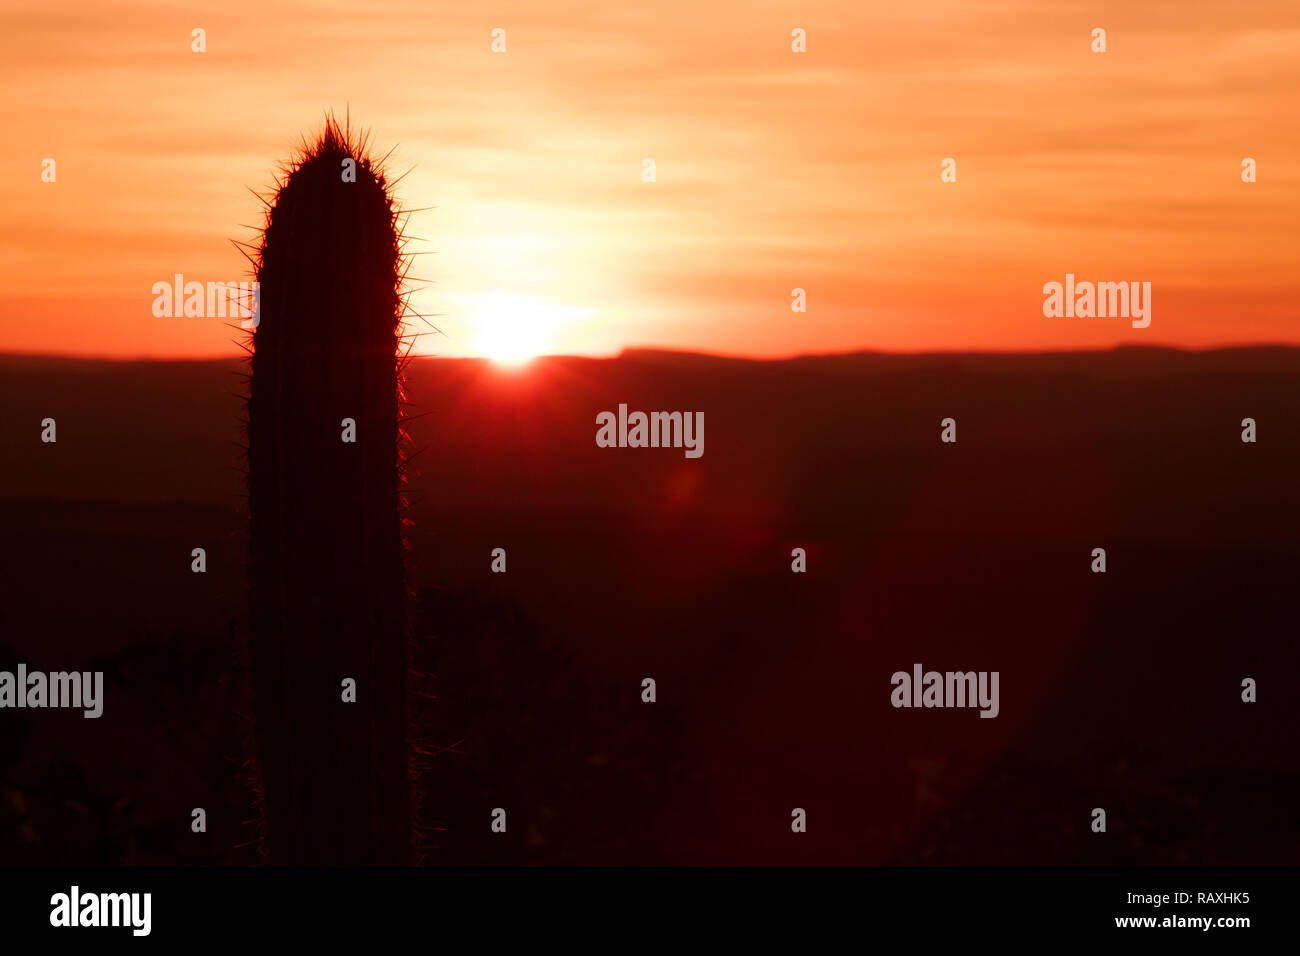 Unico dettaglio di cactus tree silhouette e lens flare durante il bellissimo tramonto rossastro con montagne in lontananza si vede all'orizzonte. Semplice tramonto scuro Foto Stock